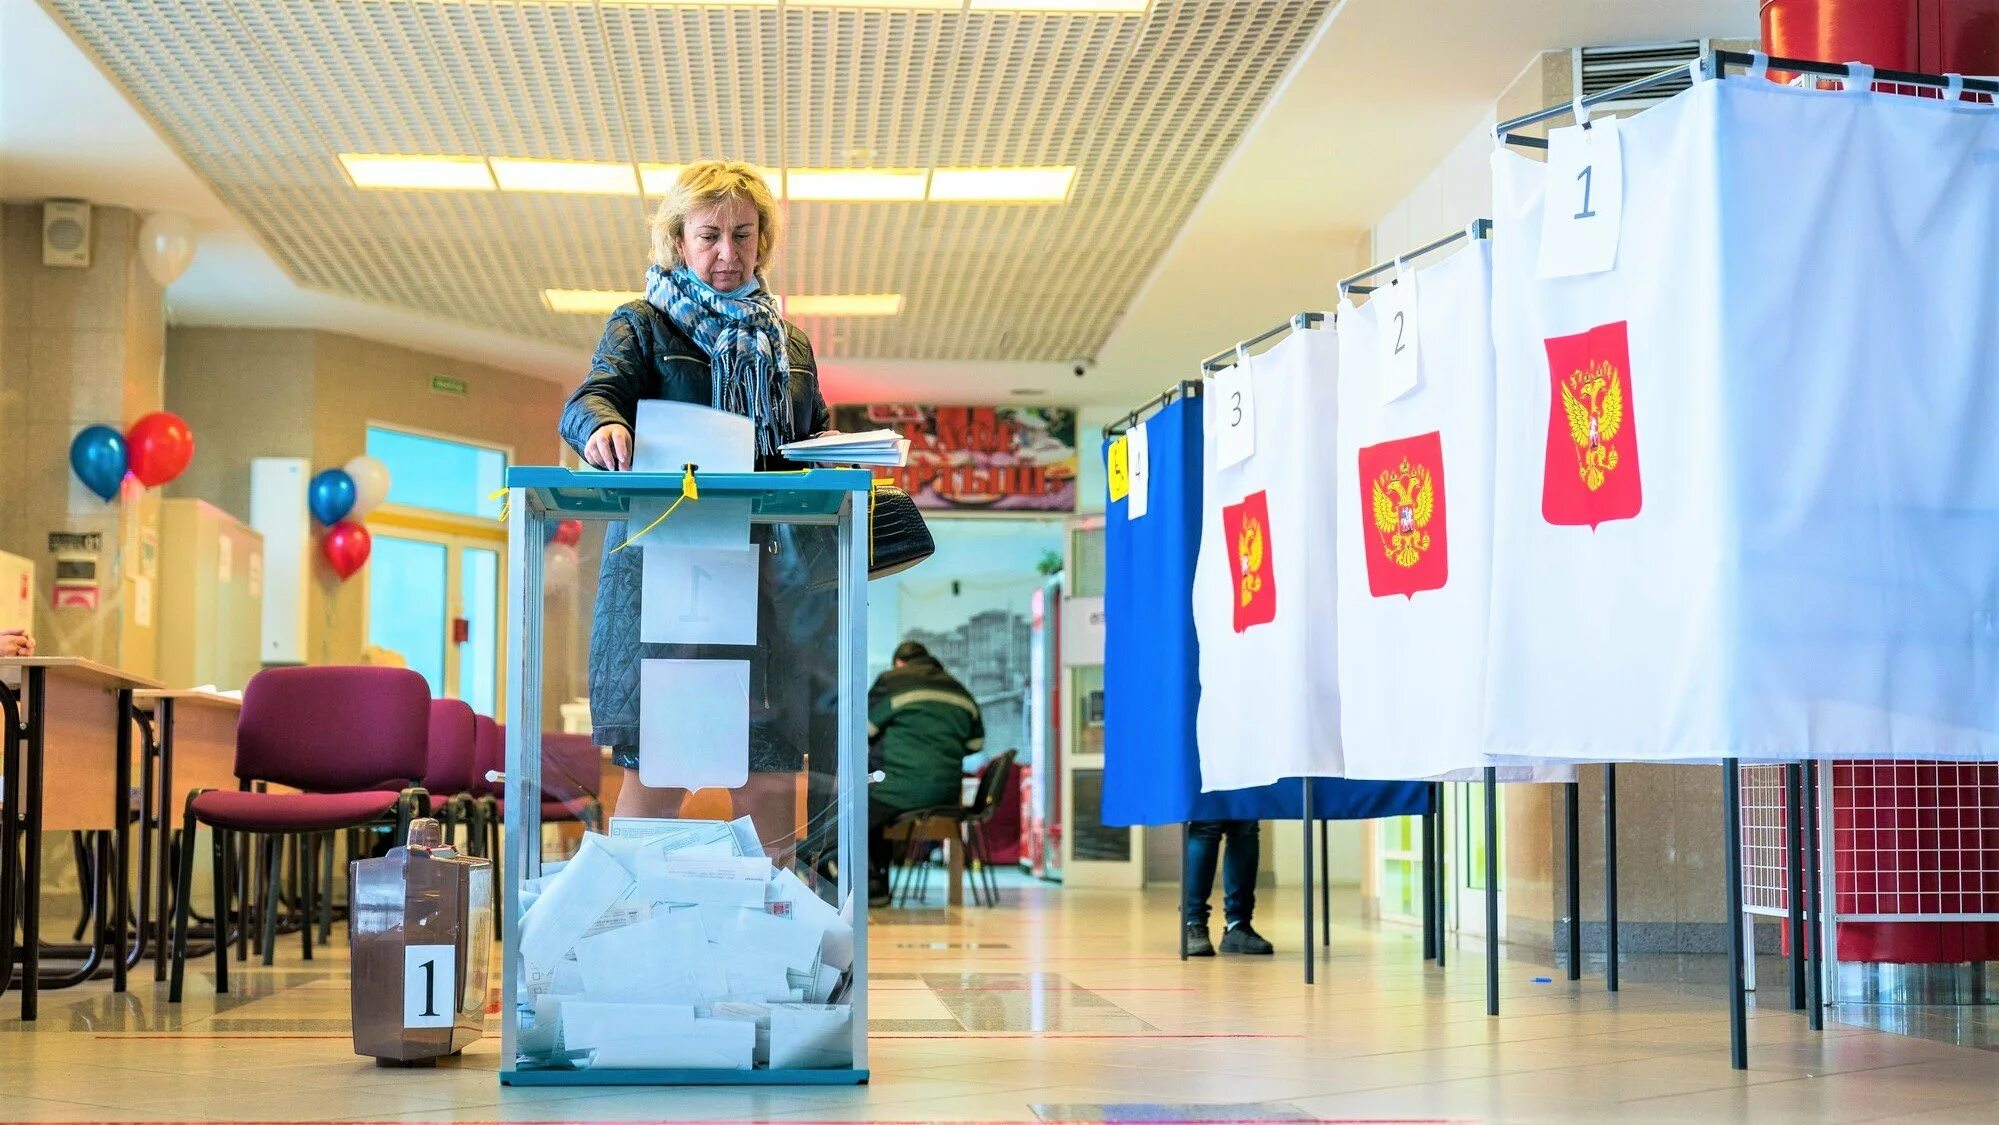 Выборы в Югре. Голосование 2022. Объявление на день выборов в ДК. Голосование, все на выборы.